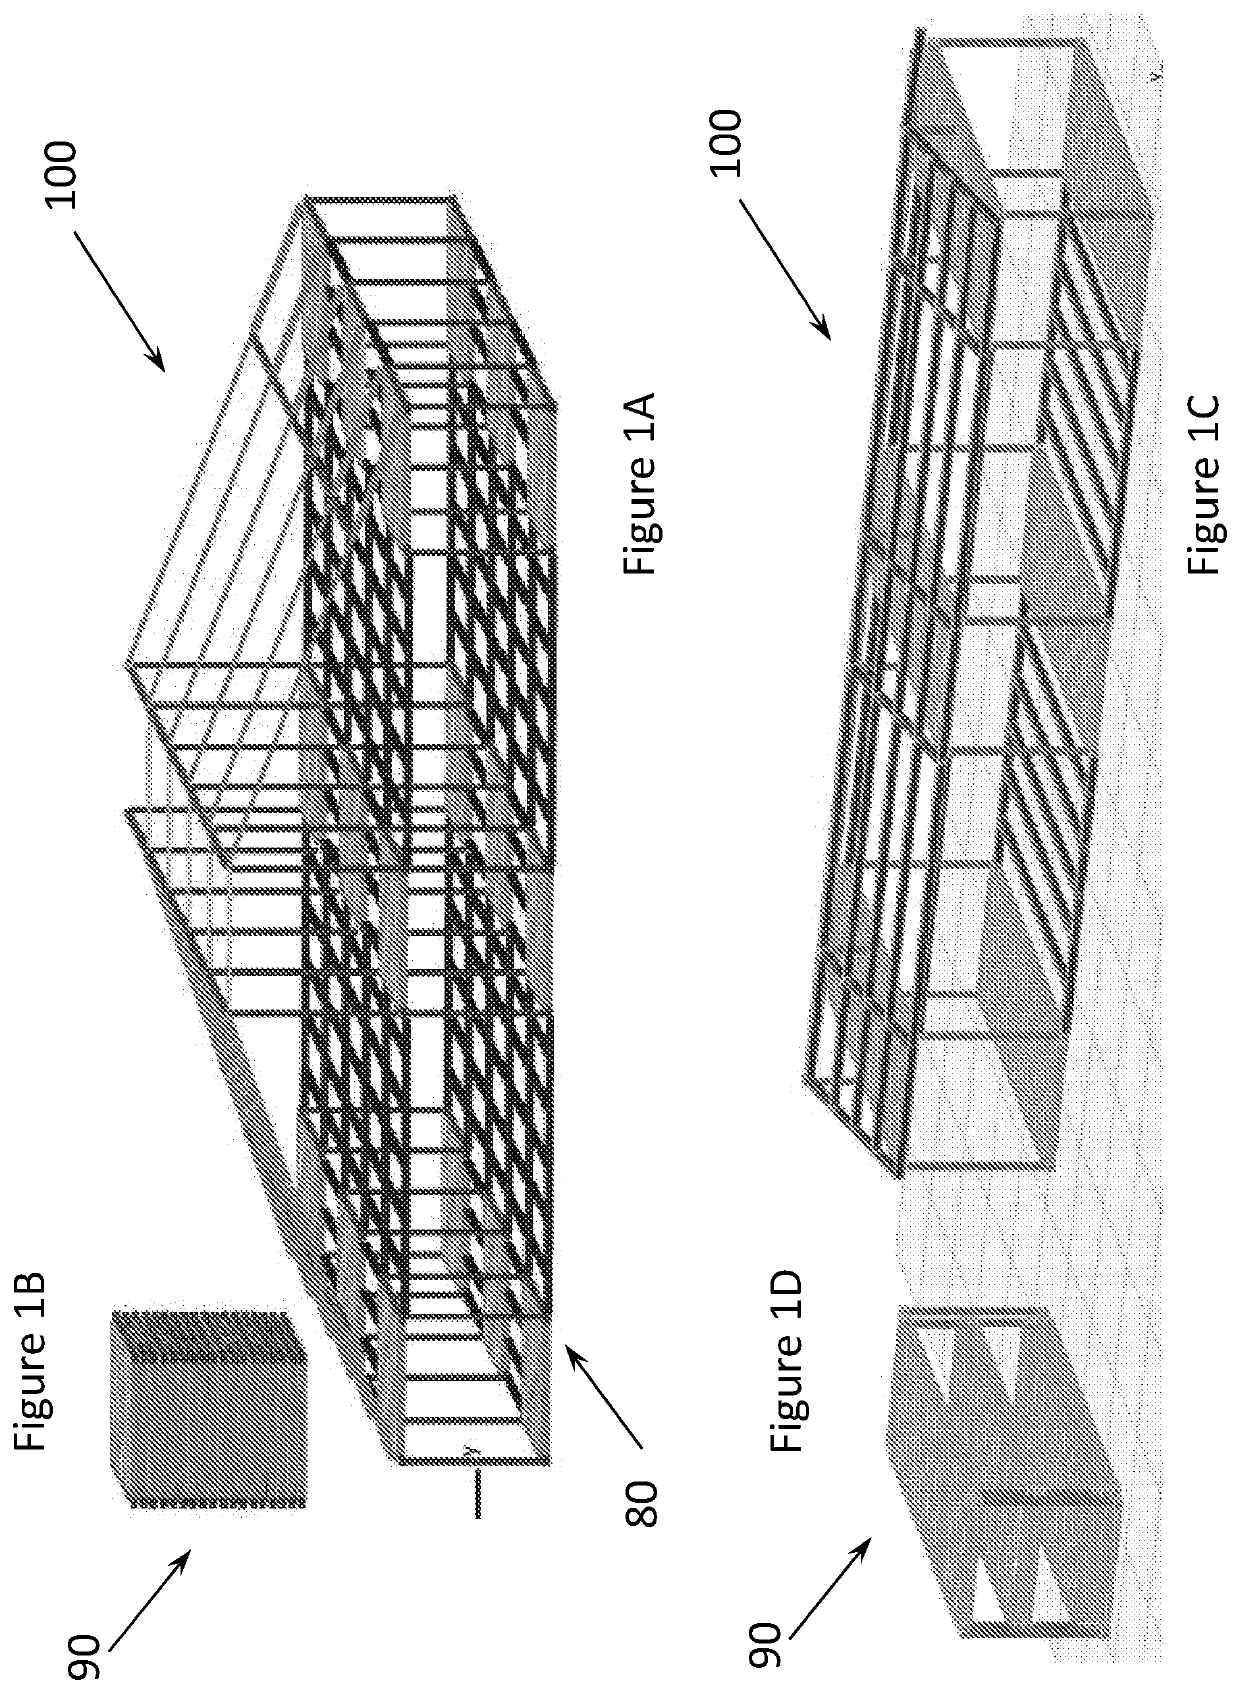 Modular housing system